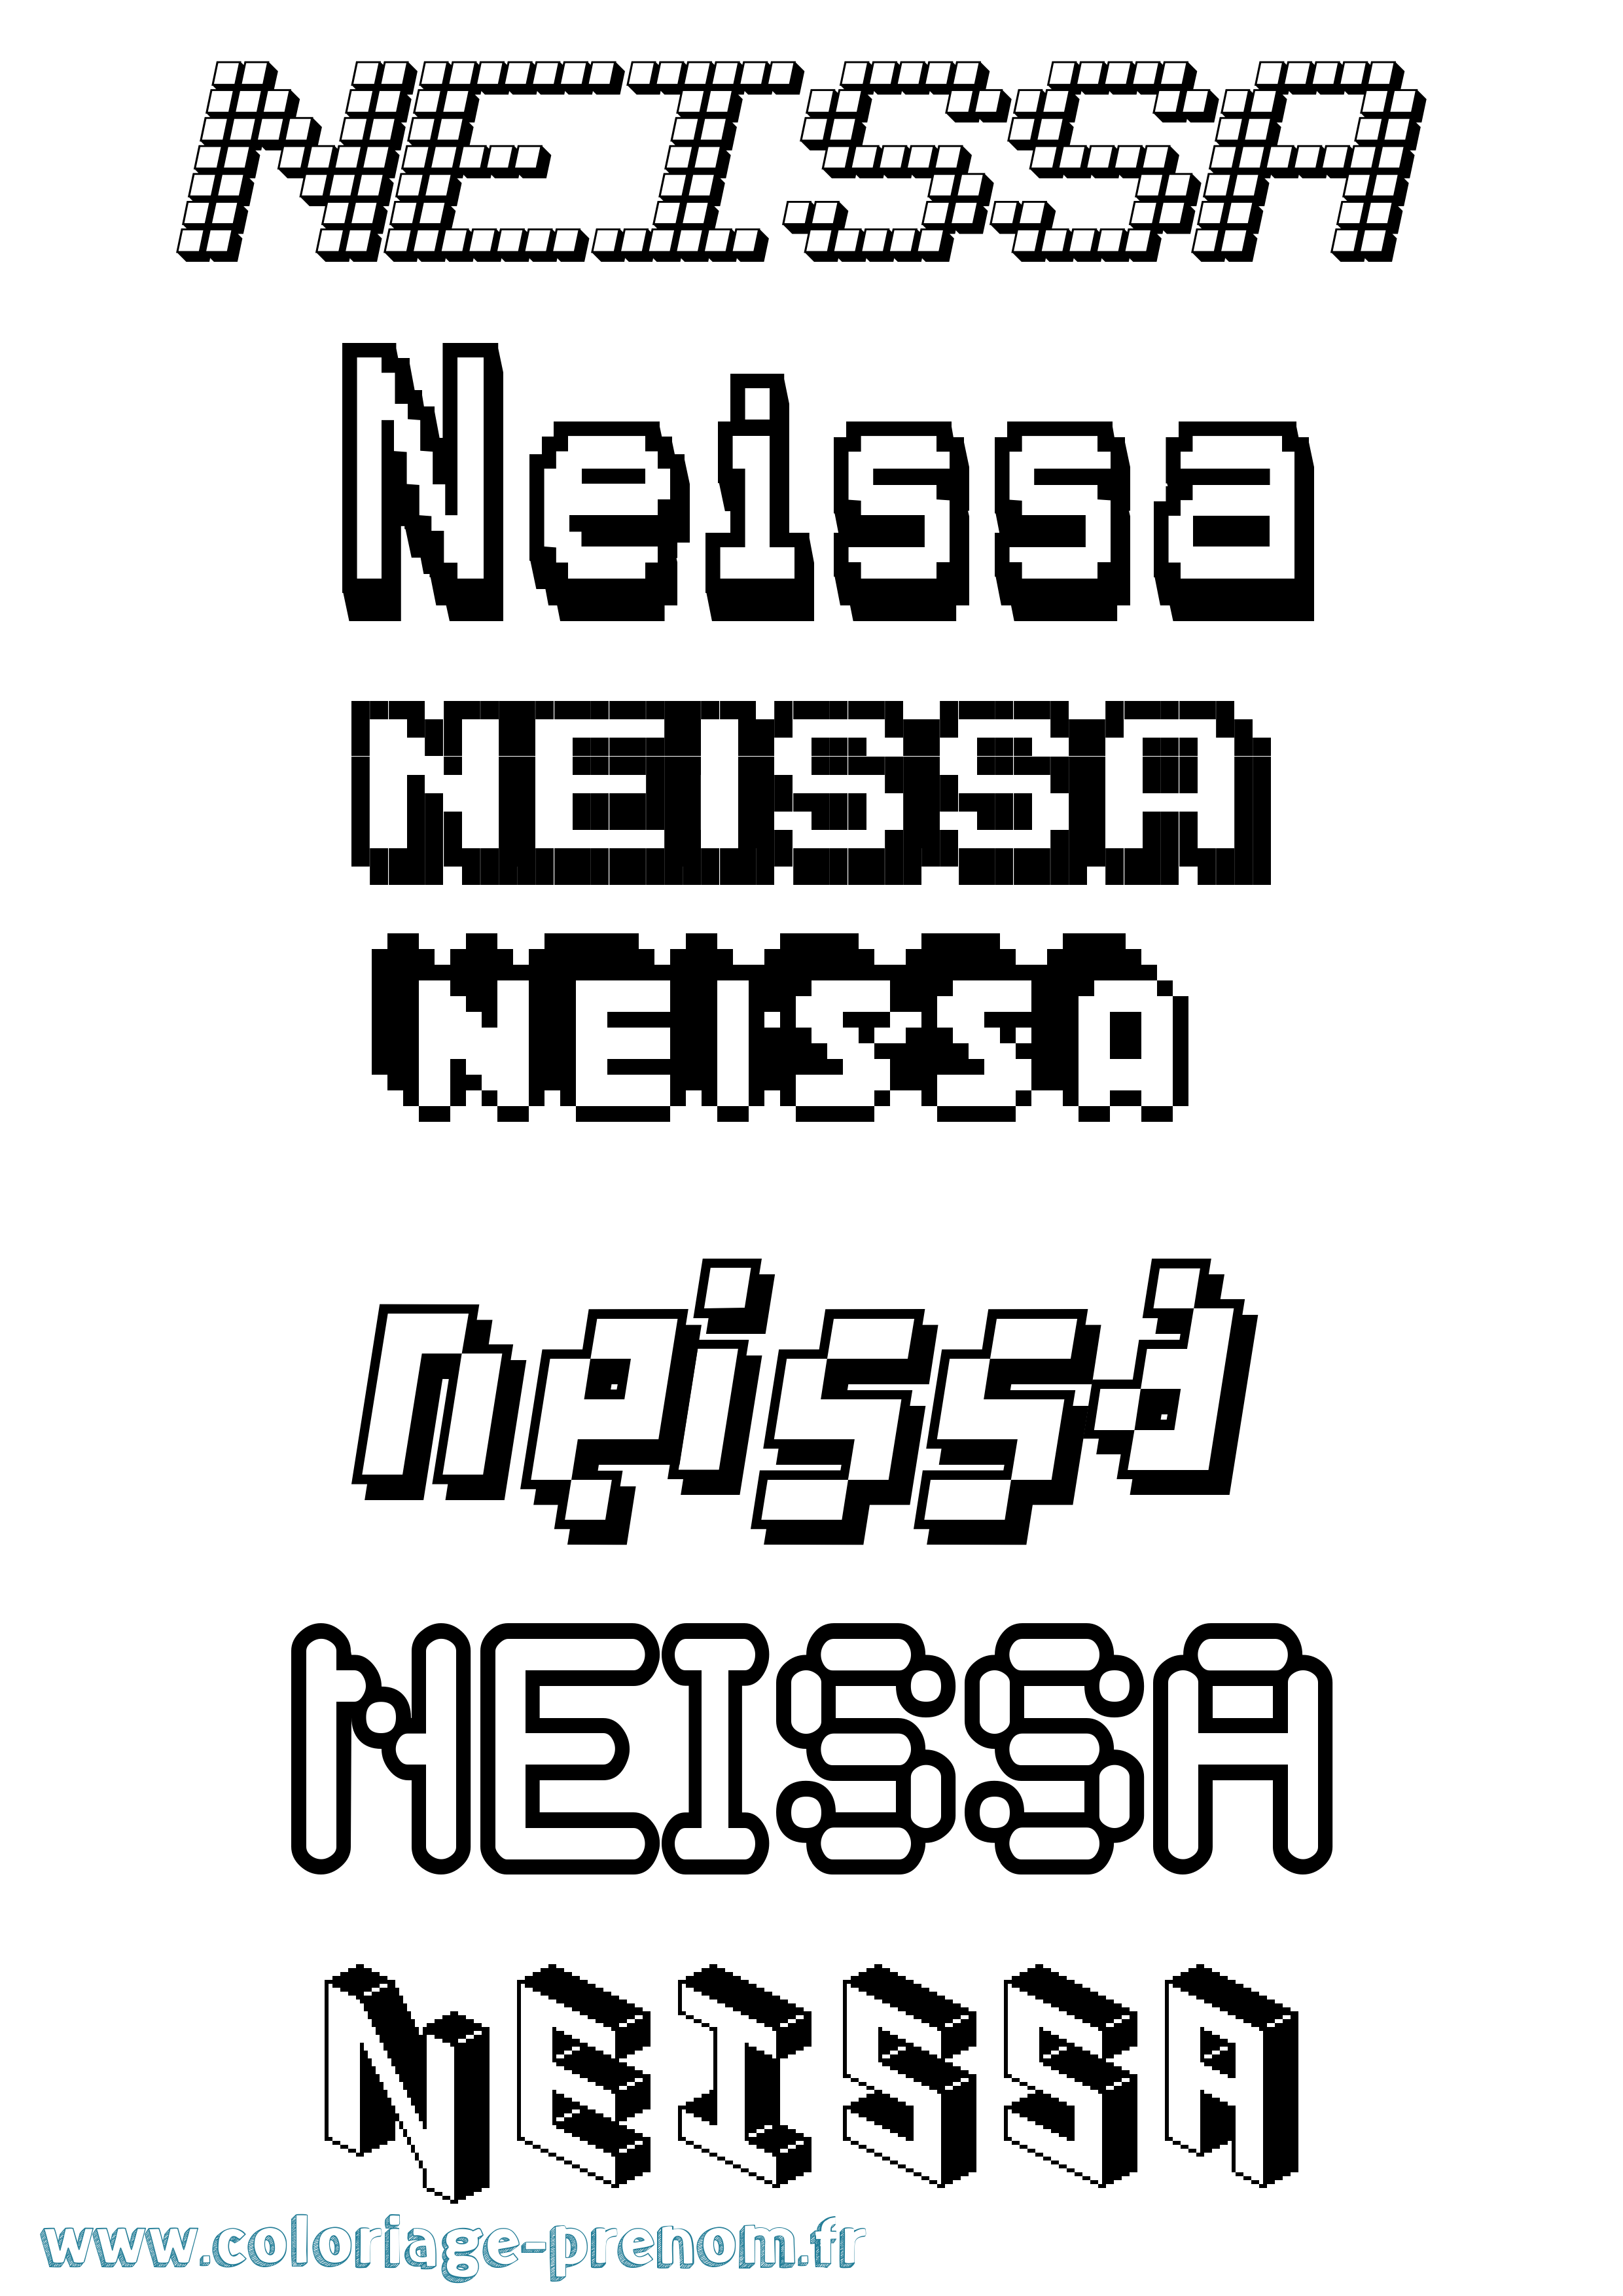 Coloriage prénom Neissa Pixel